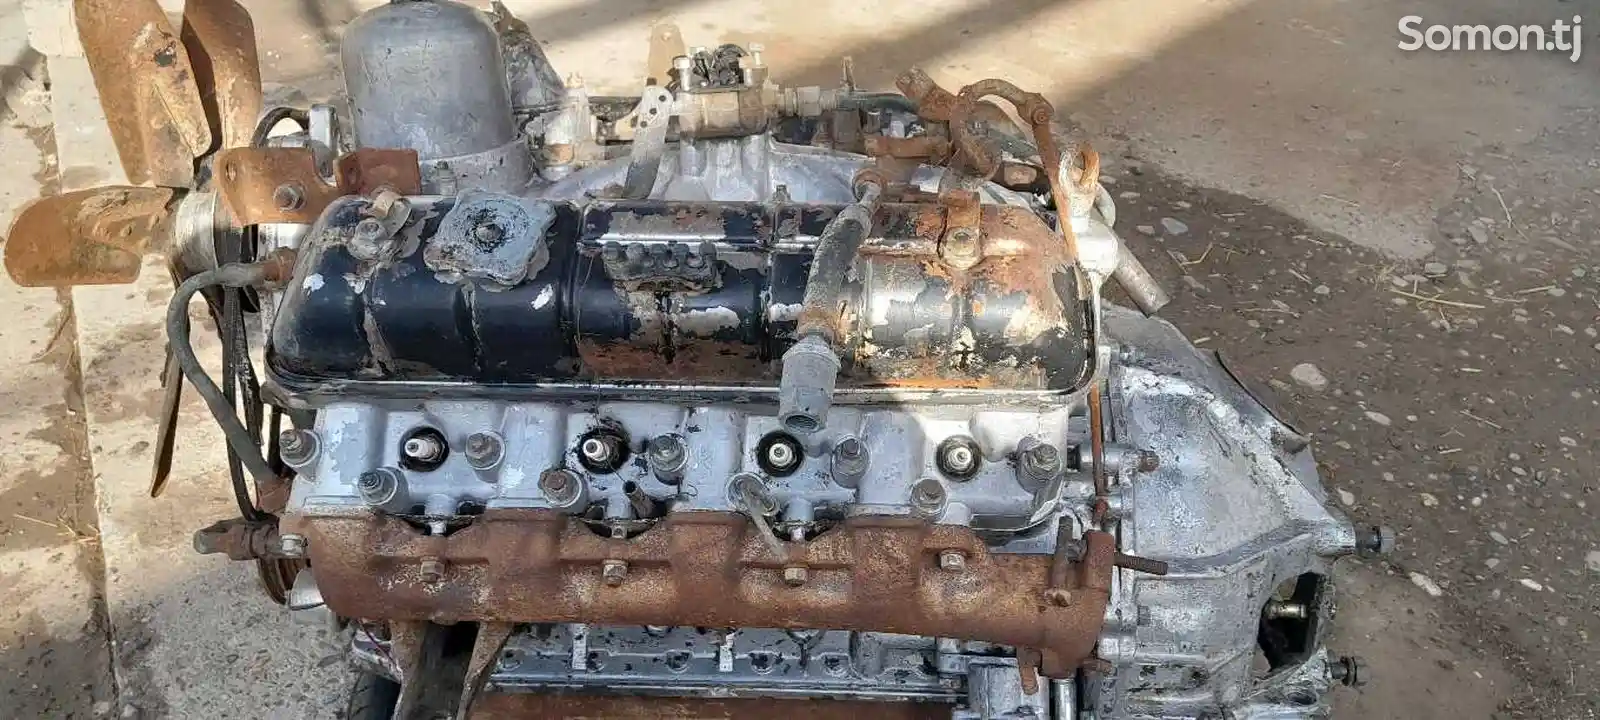 Двигатель от ГАЗ 53-2